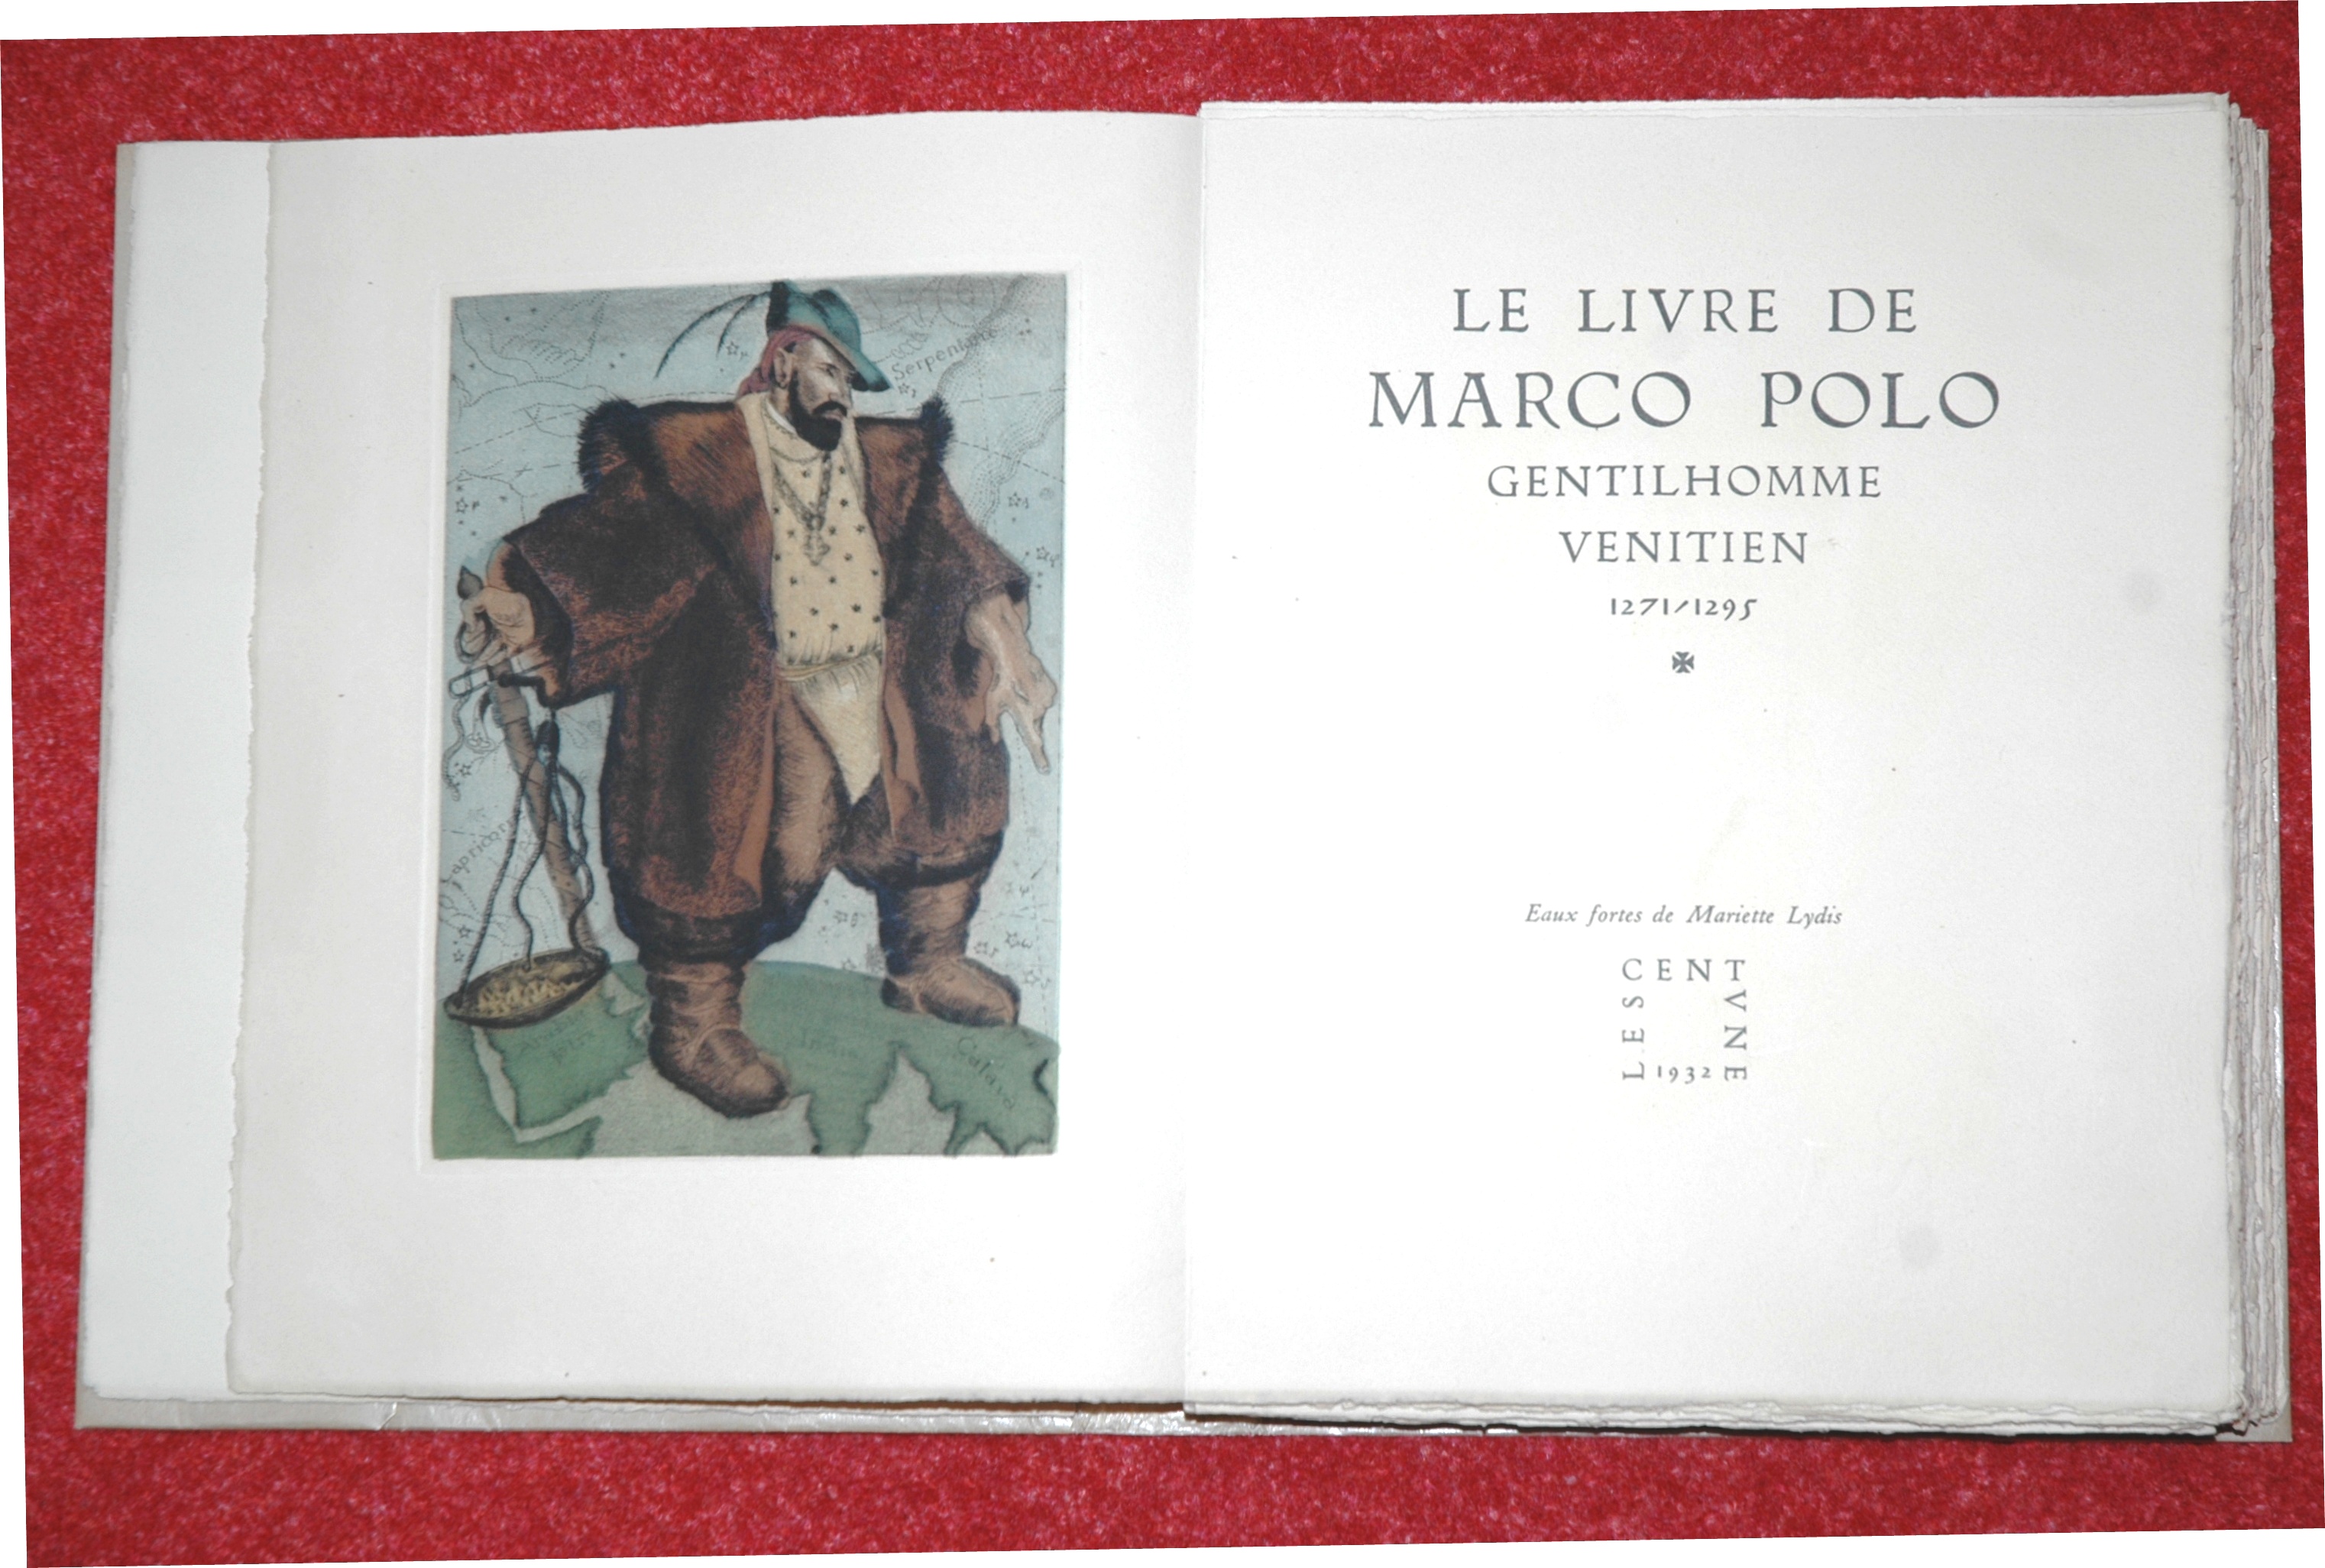 Le livre de Marco Polo, eaux-fortes de Mariette LYDIS